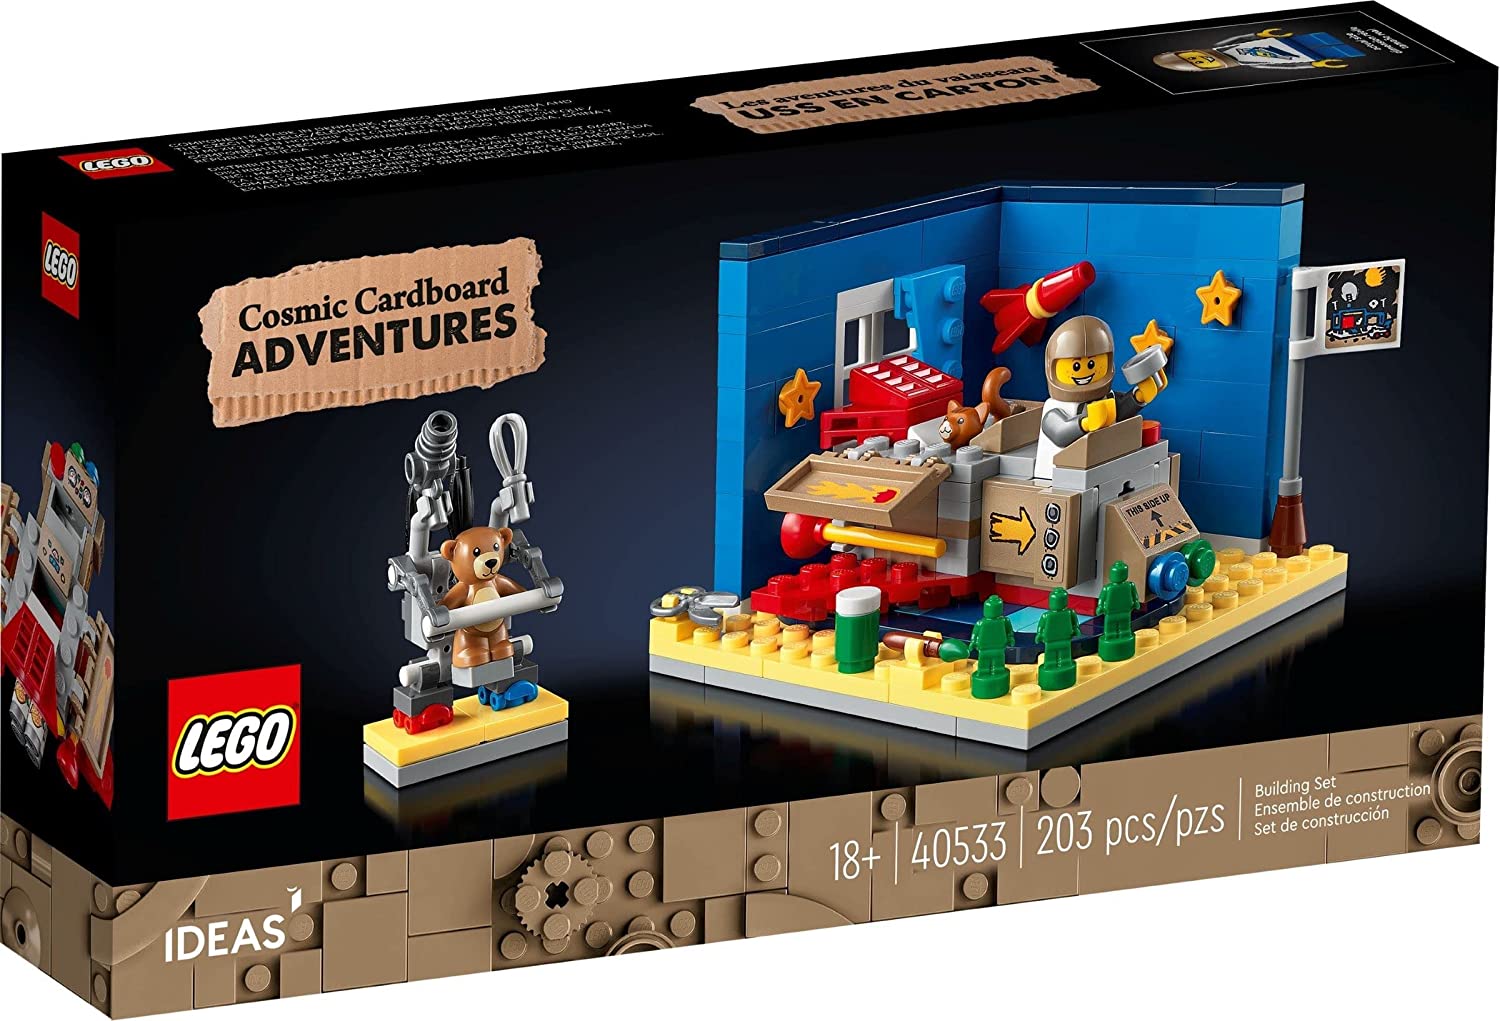 Immagine relativa a LEGO Set 40533 - Abenteuer im Astronauten-Kinderzimmer